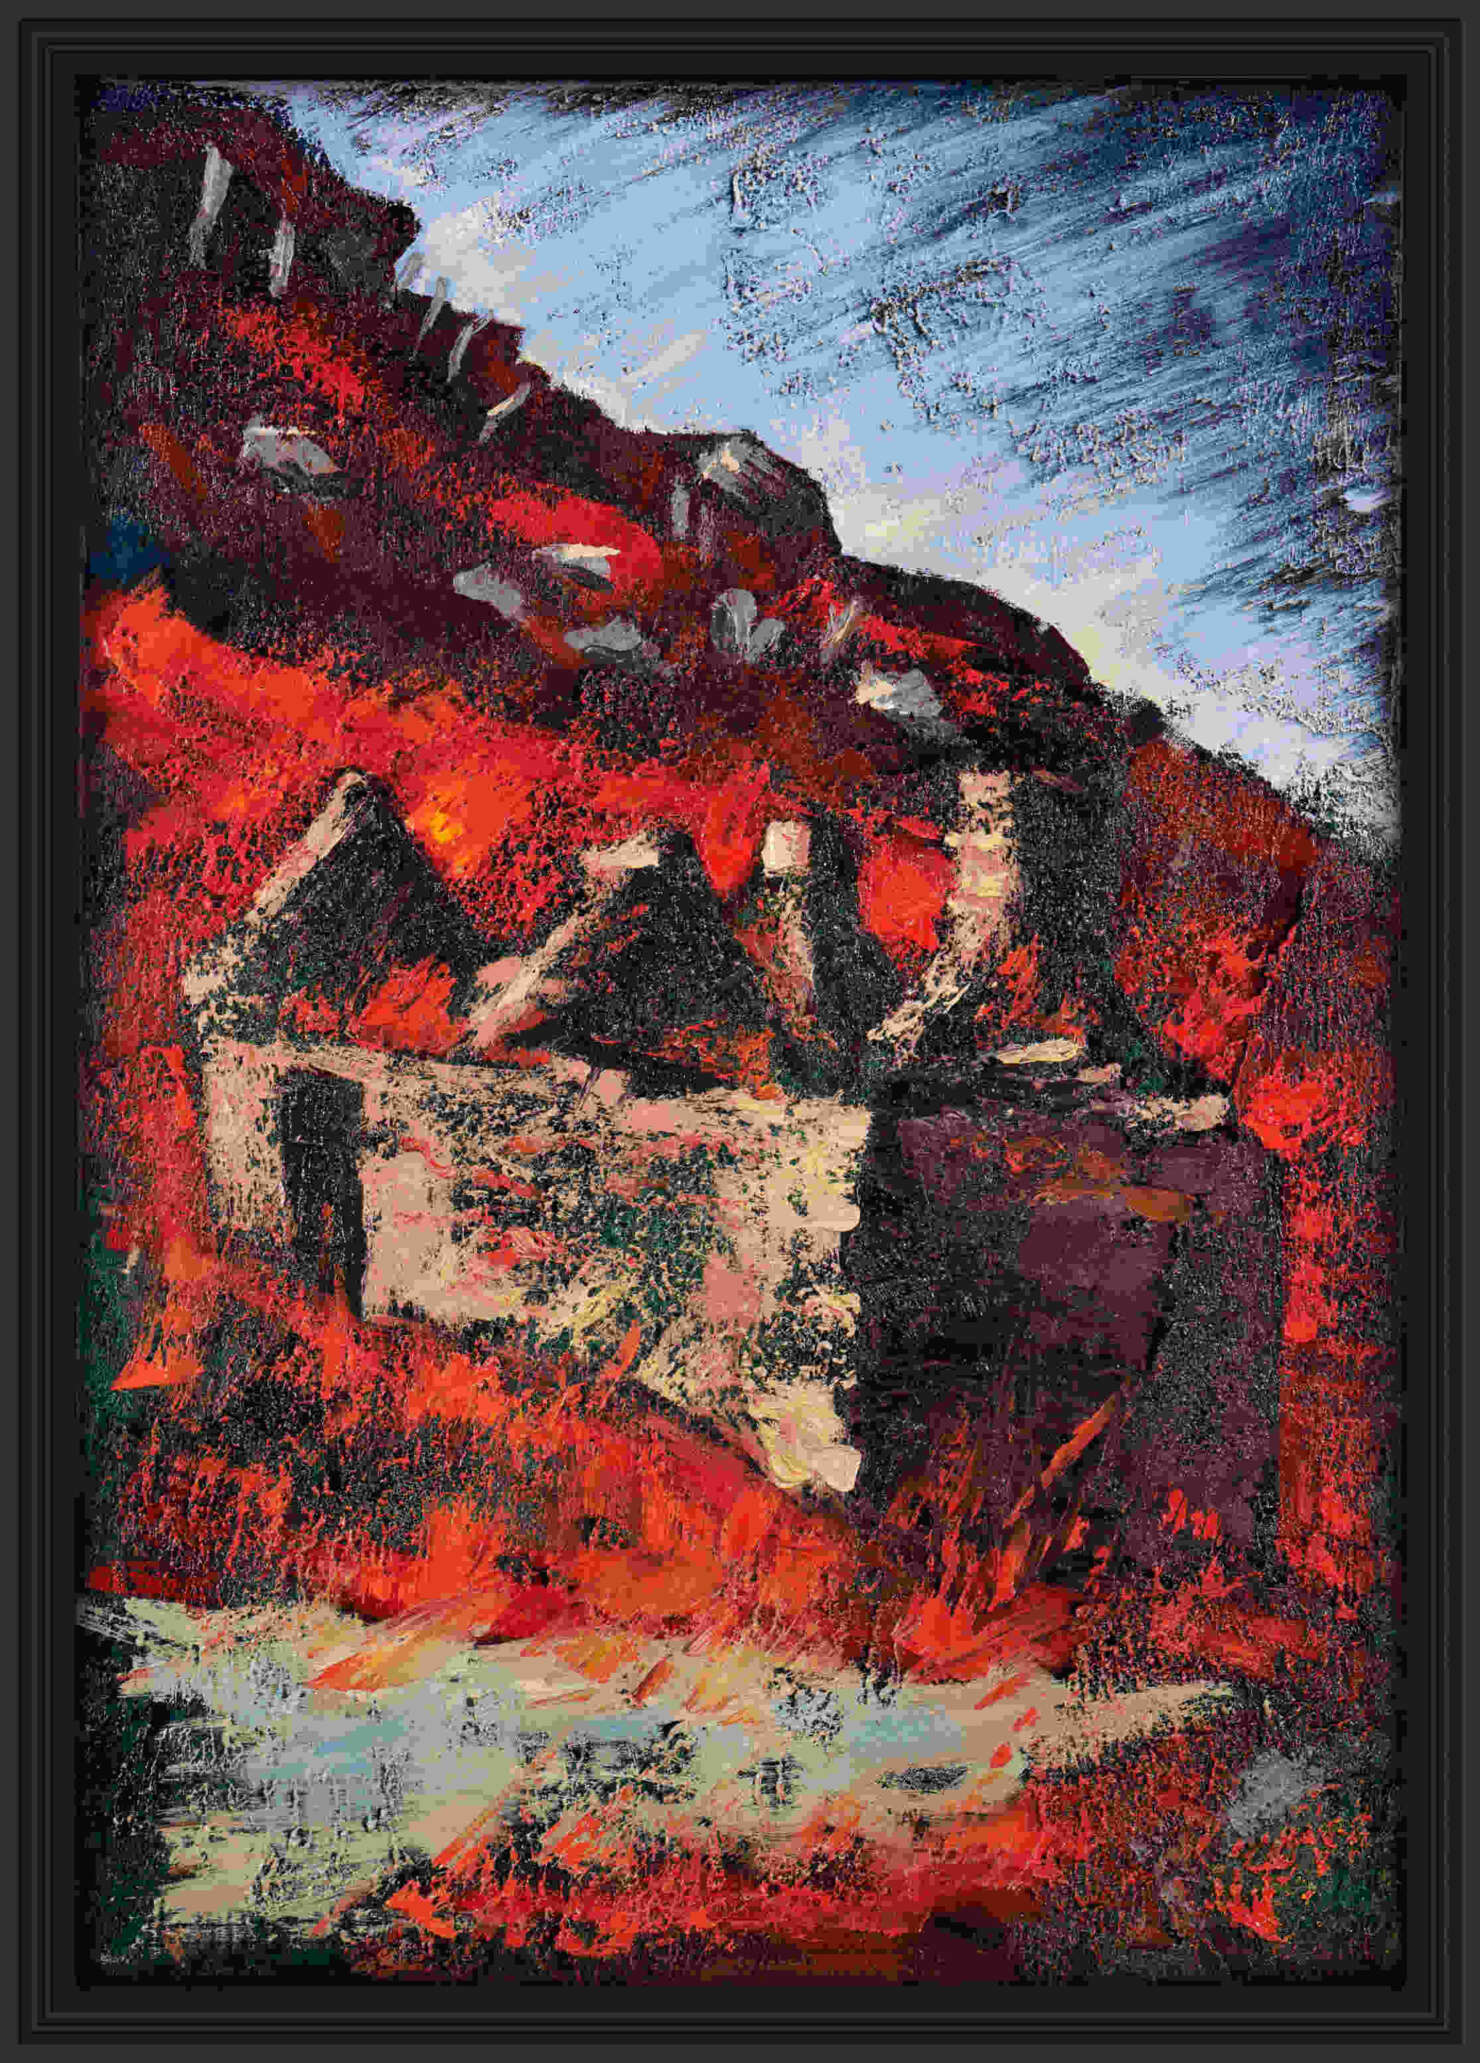 artist rod coyne's landscape "Famine Village Ruins, East" is shown here, in a black frame.